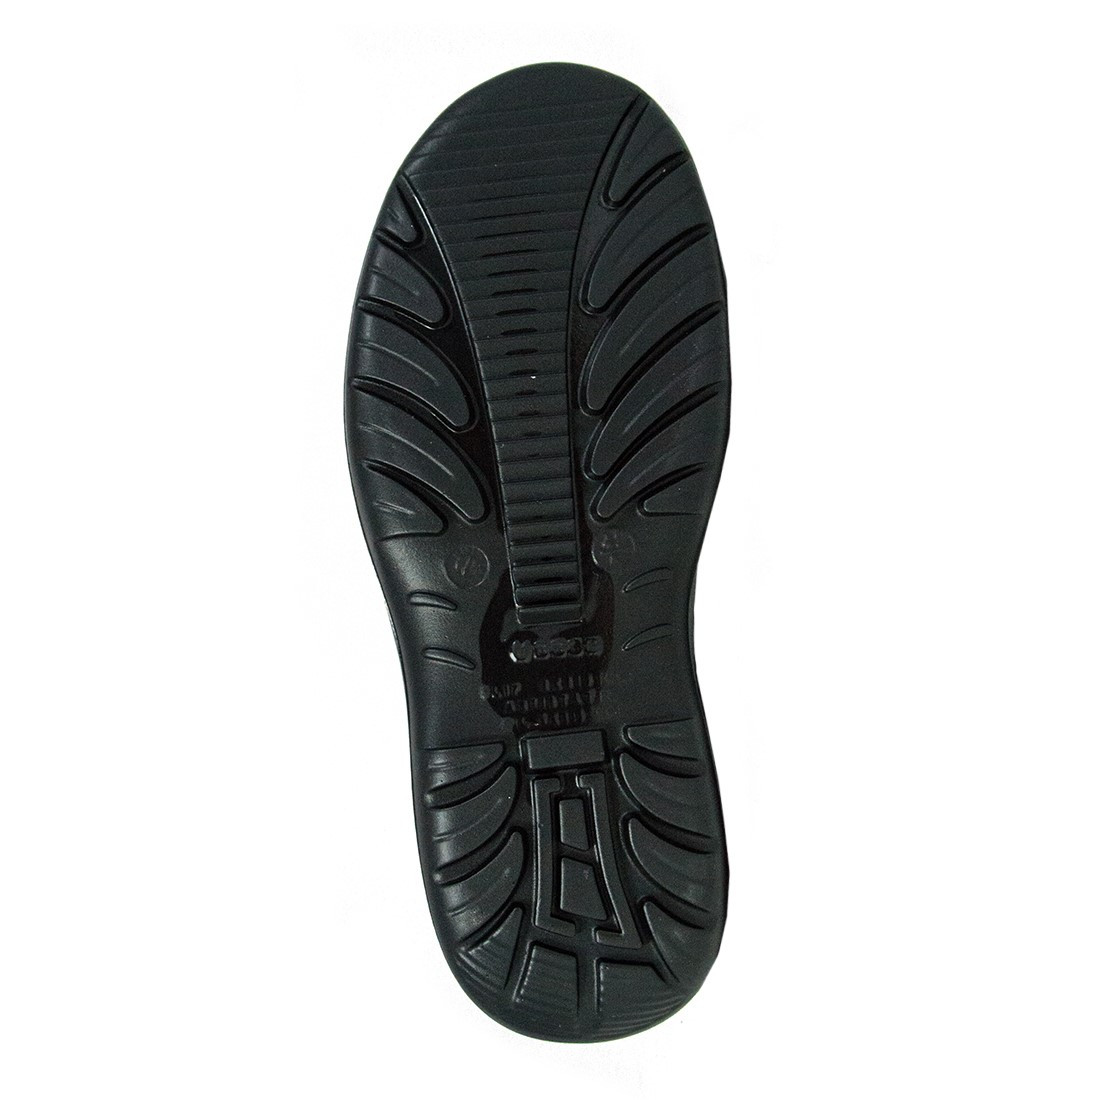 Verdi Boot S3 SRC - Les chaussures de protection